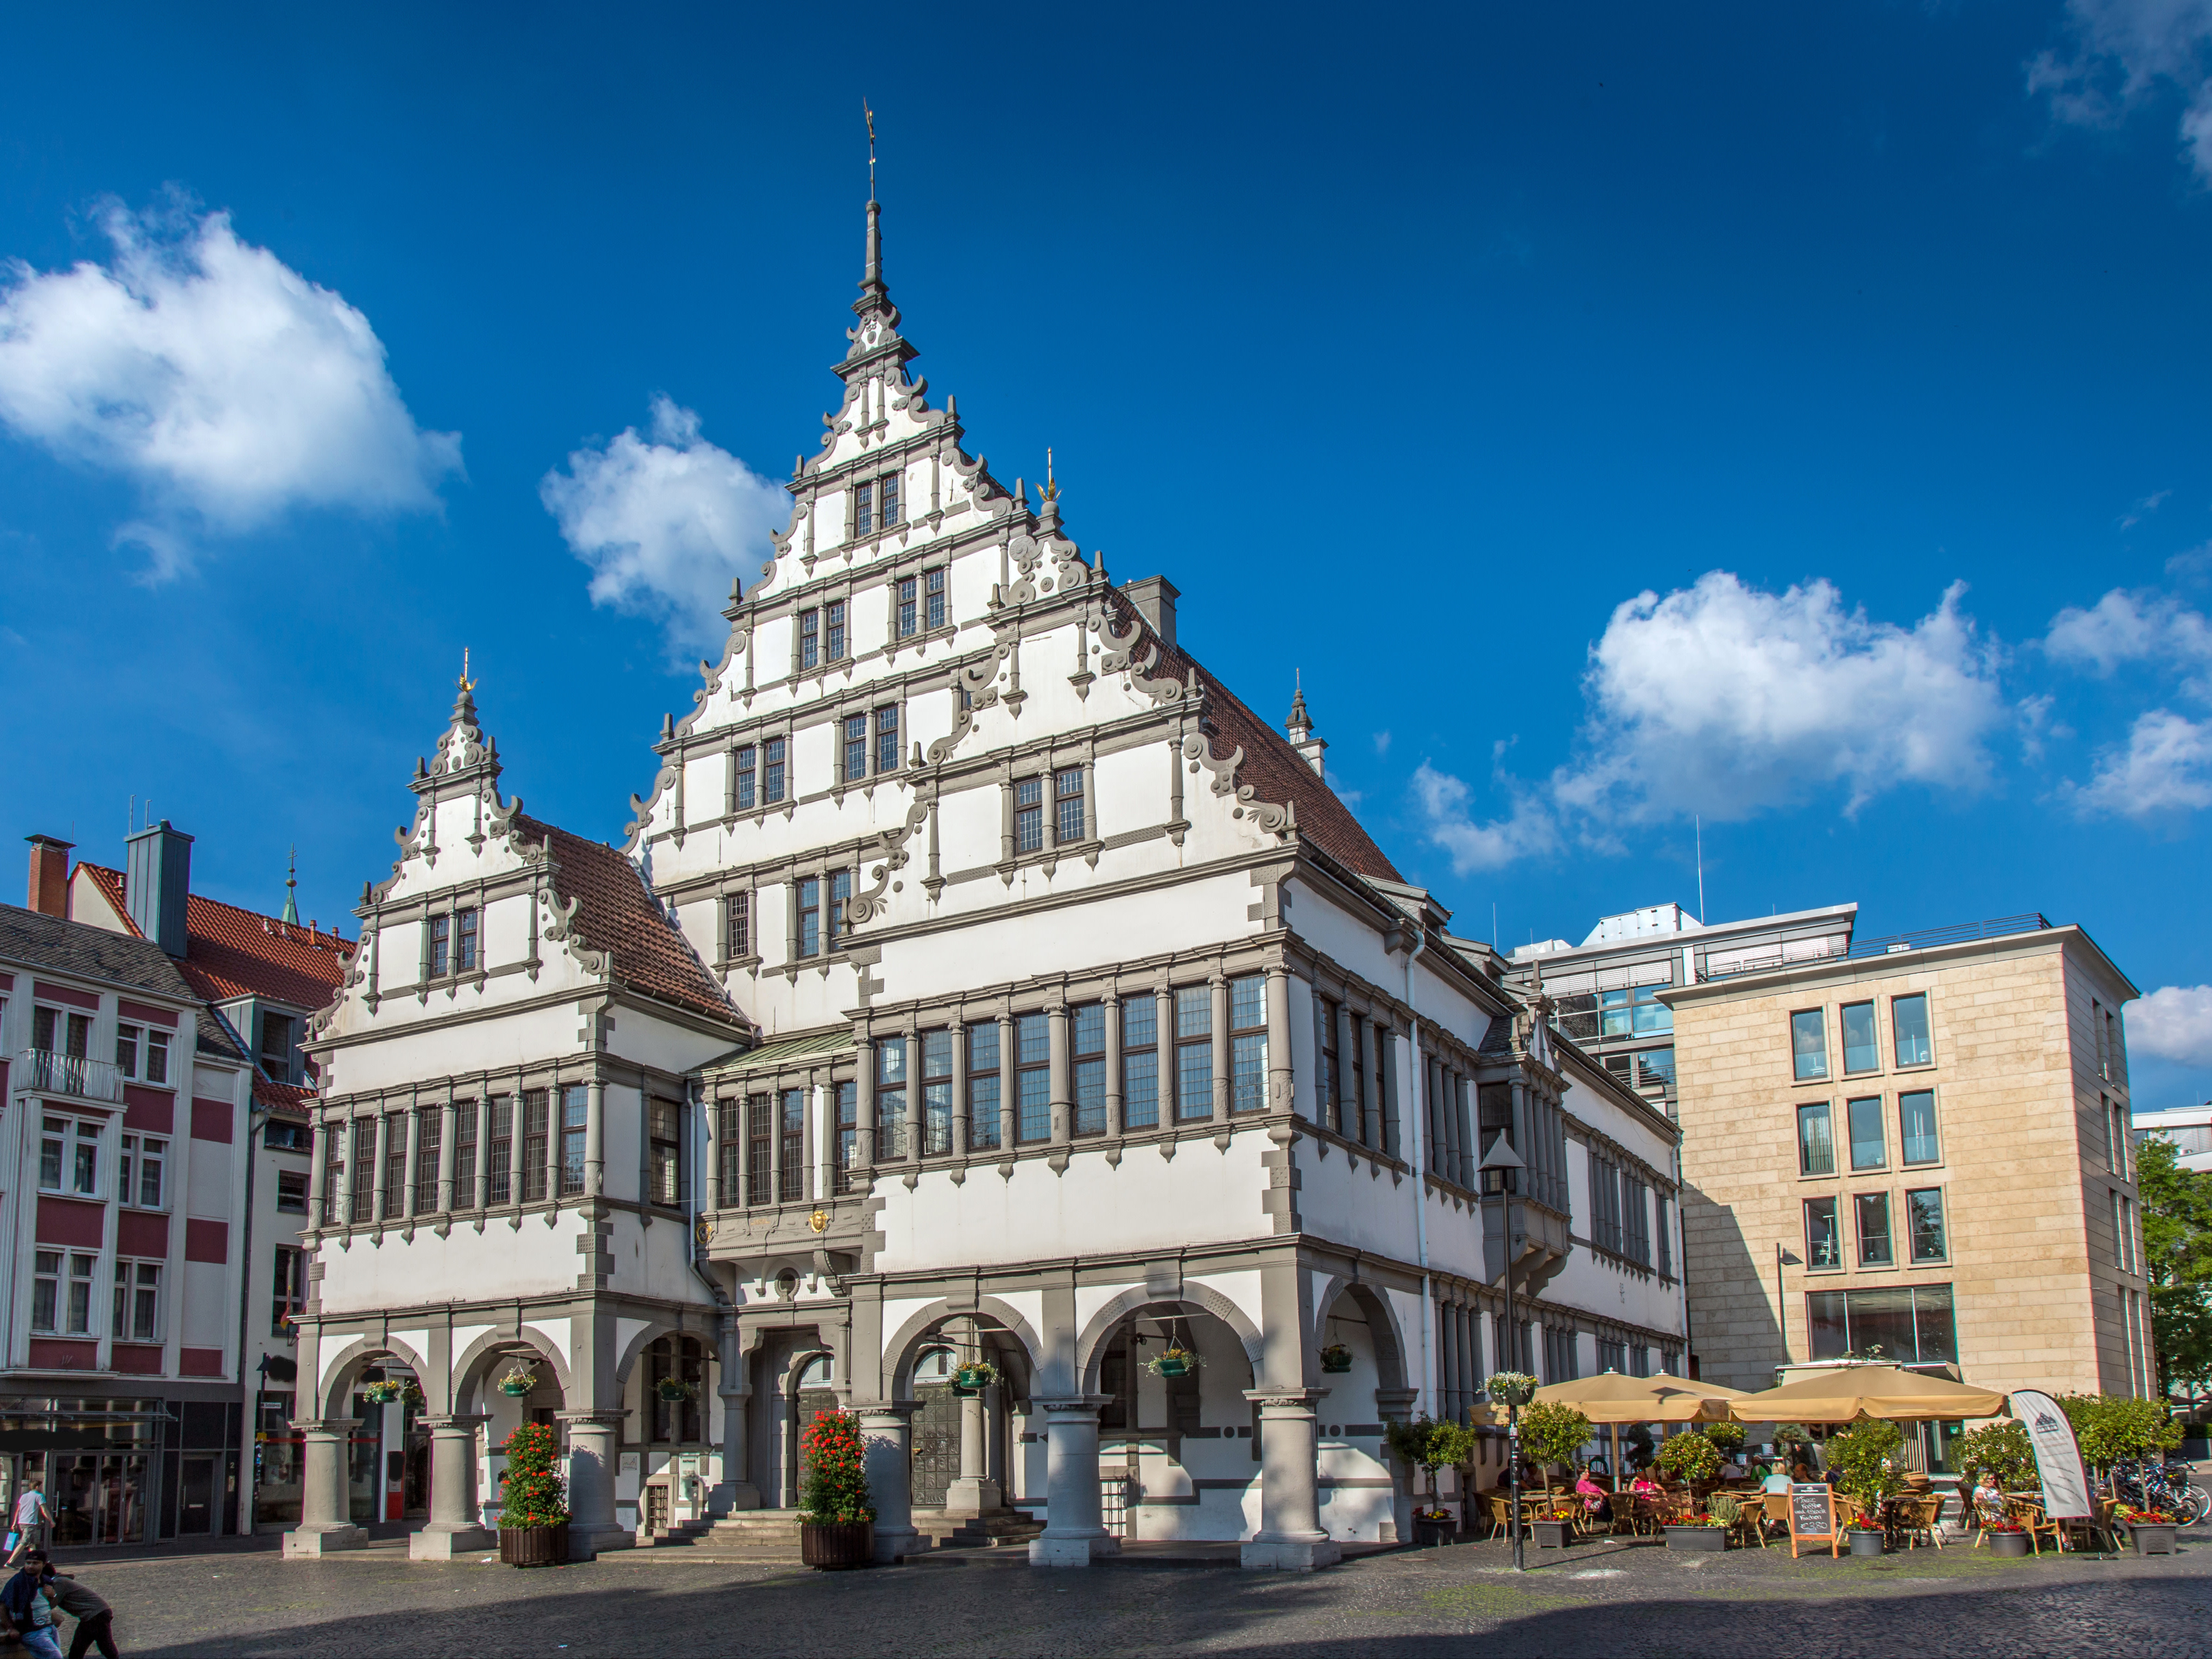 Ansicht der Stadt Paderborn mit Rathaus